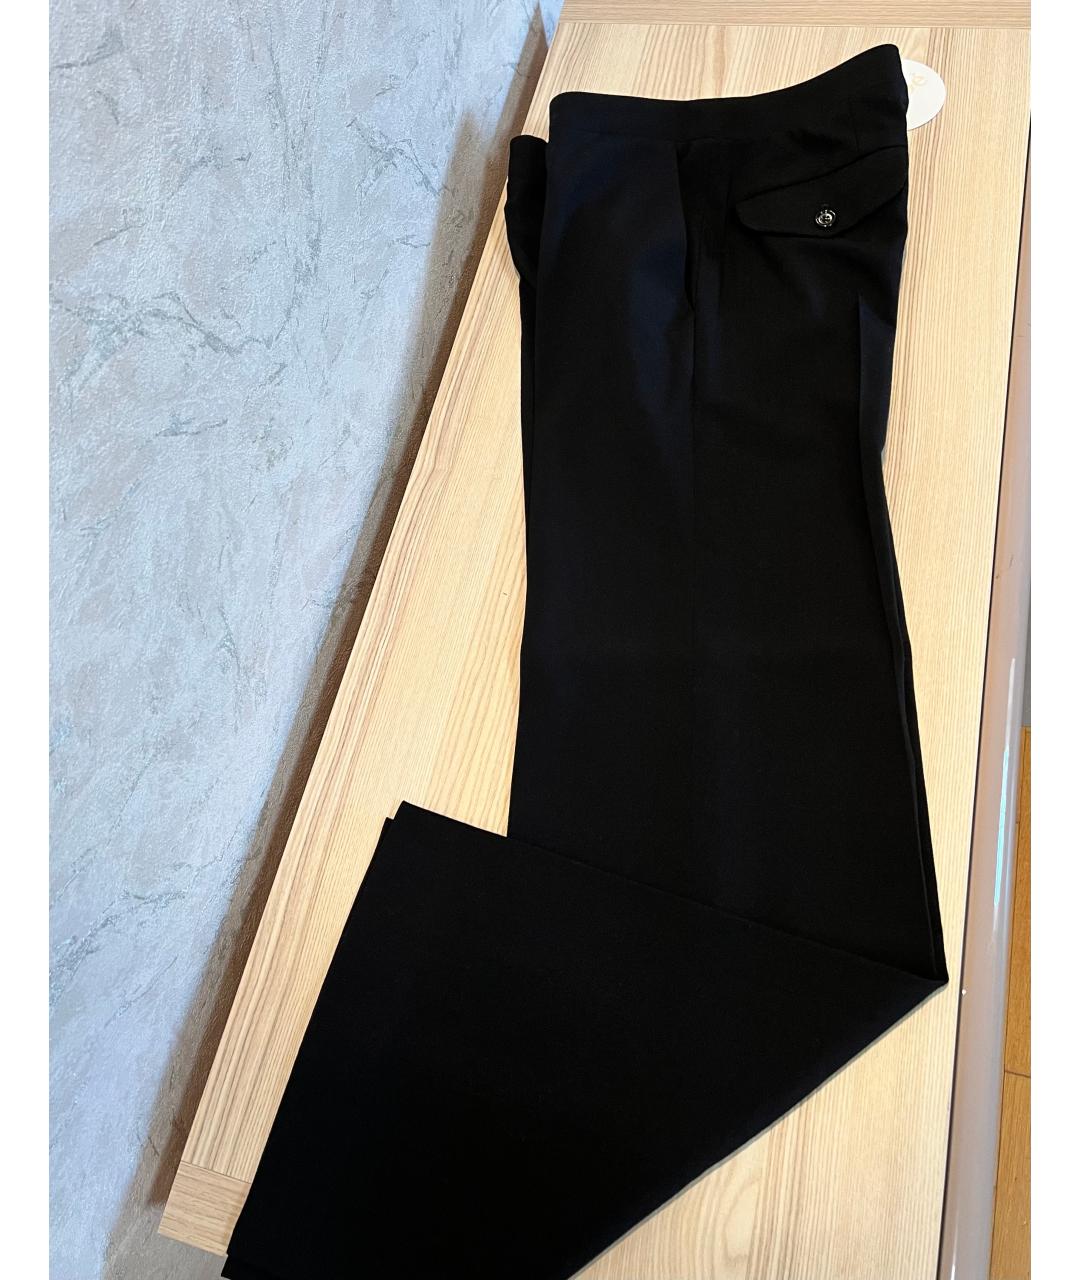 CHLOE Черные шерстяные прямые брюки, фото 5